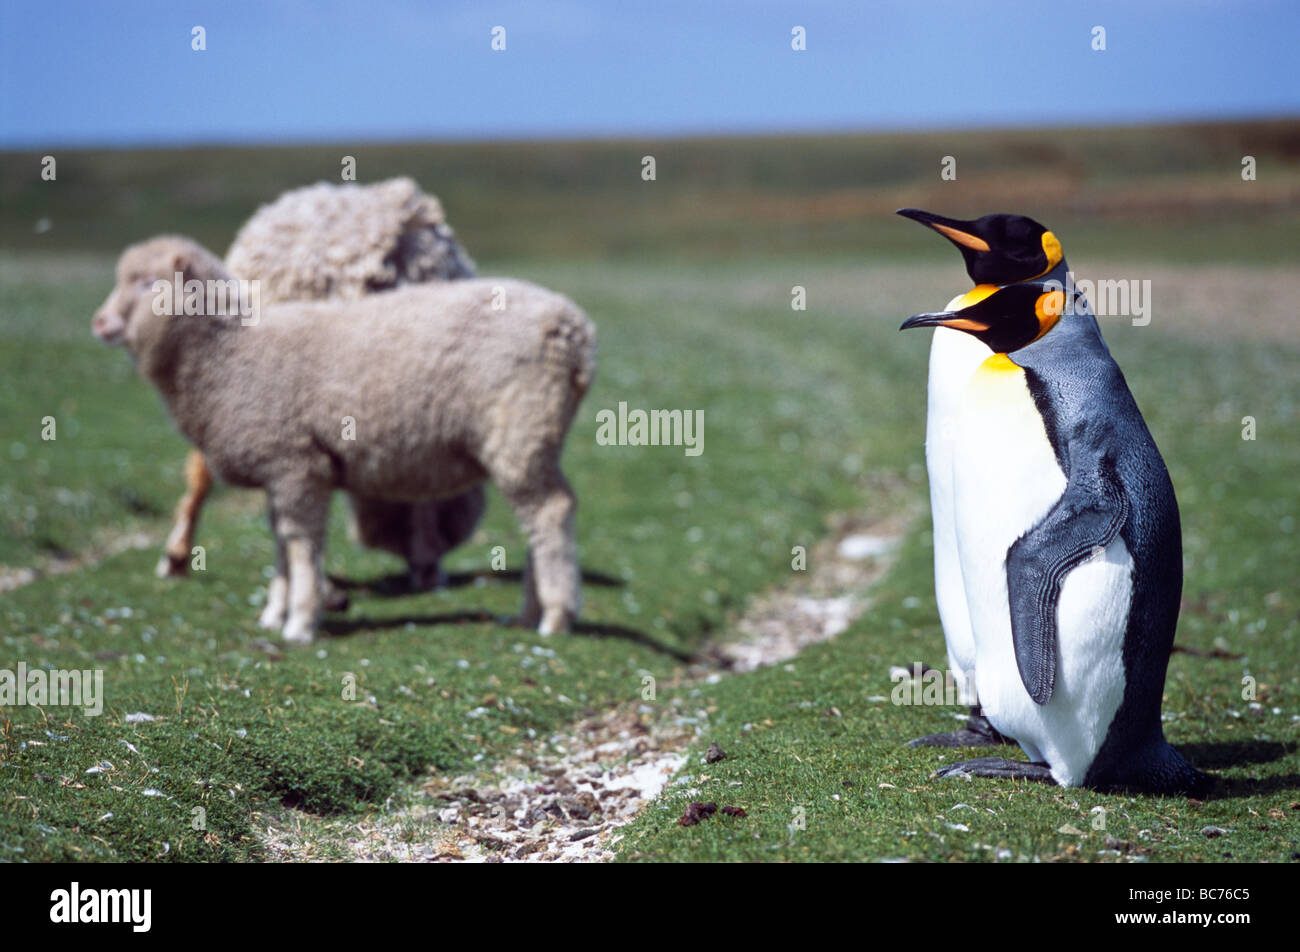 Un par de Pingüinos rey, aptenodytes patagonicus, de pie en tierras de cultivo cerca de ovejas domesticadas Foto de stock